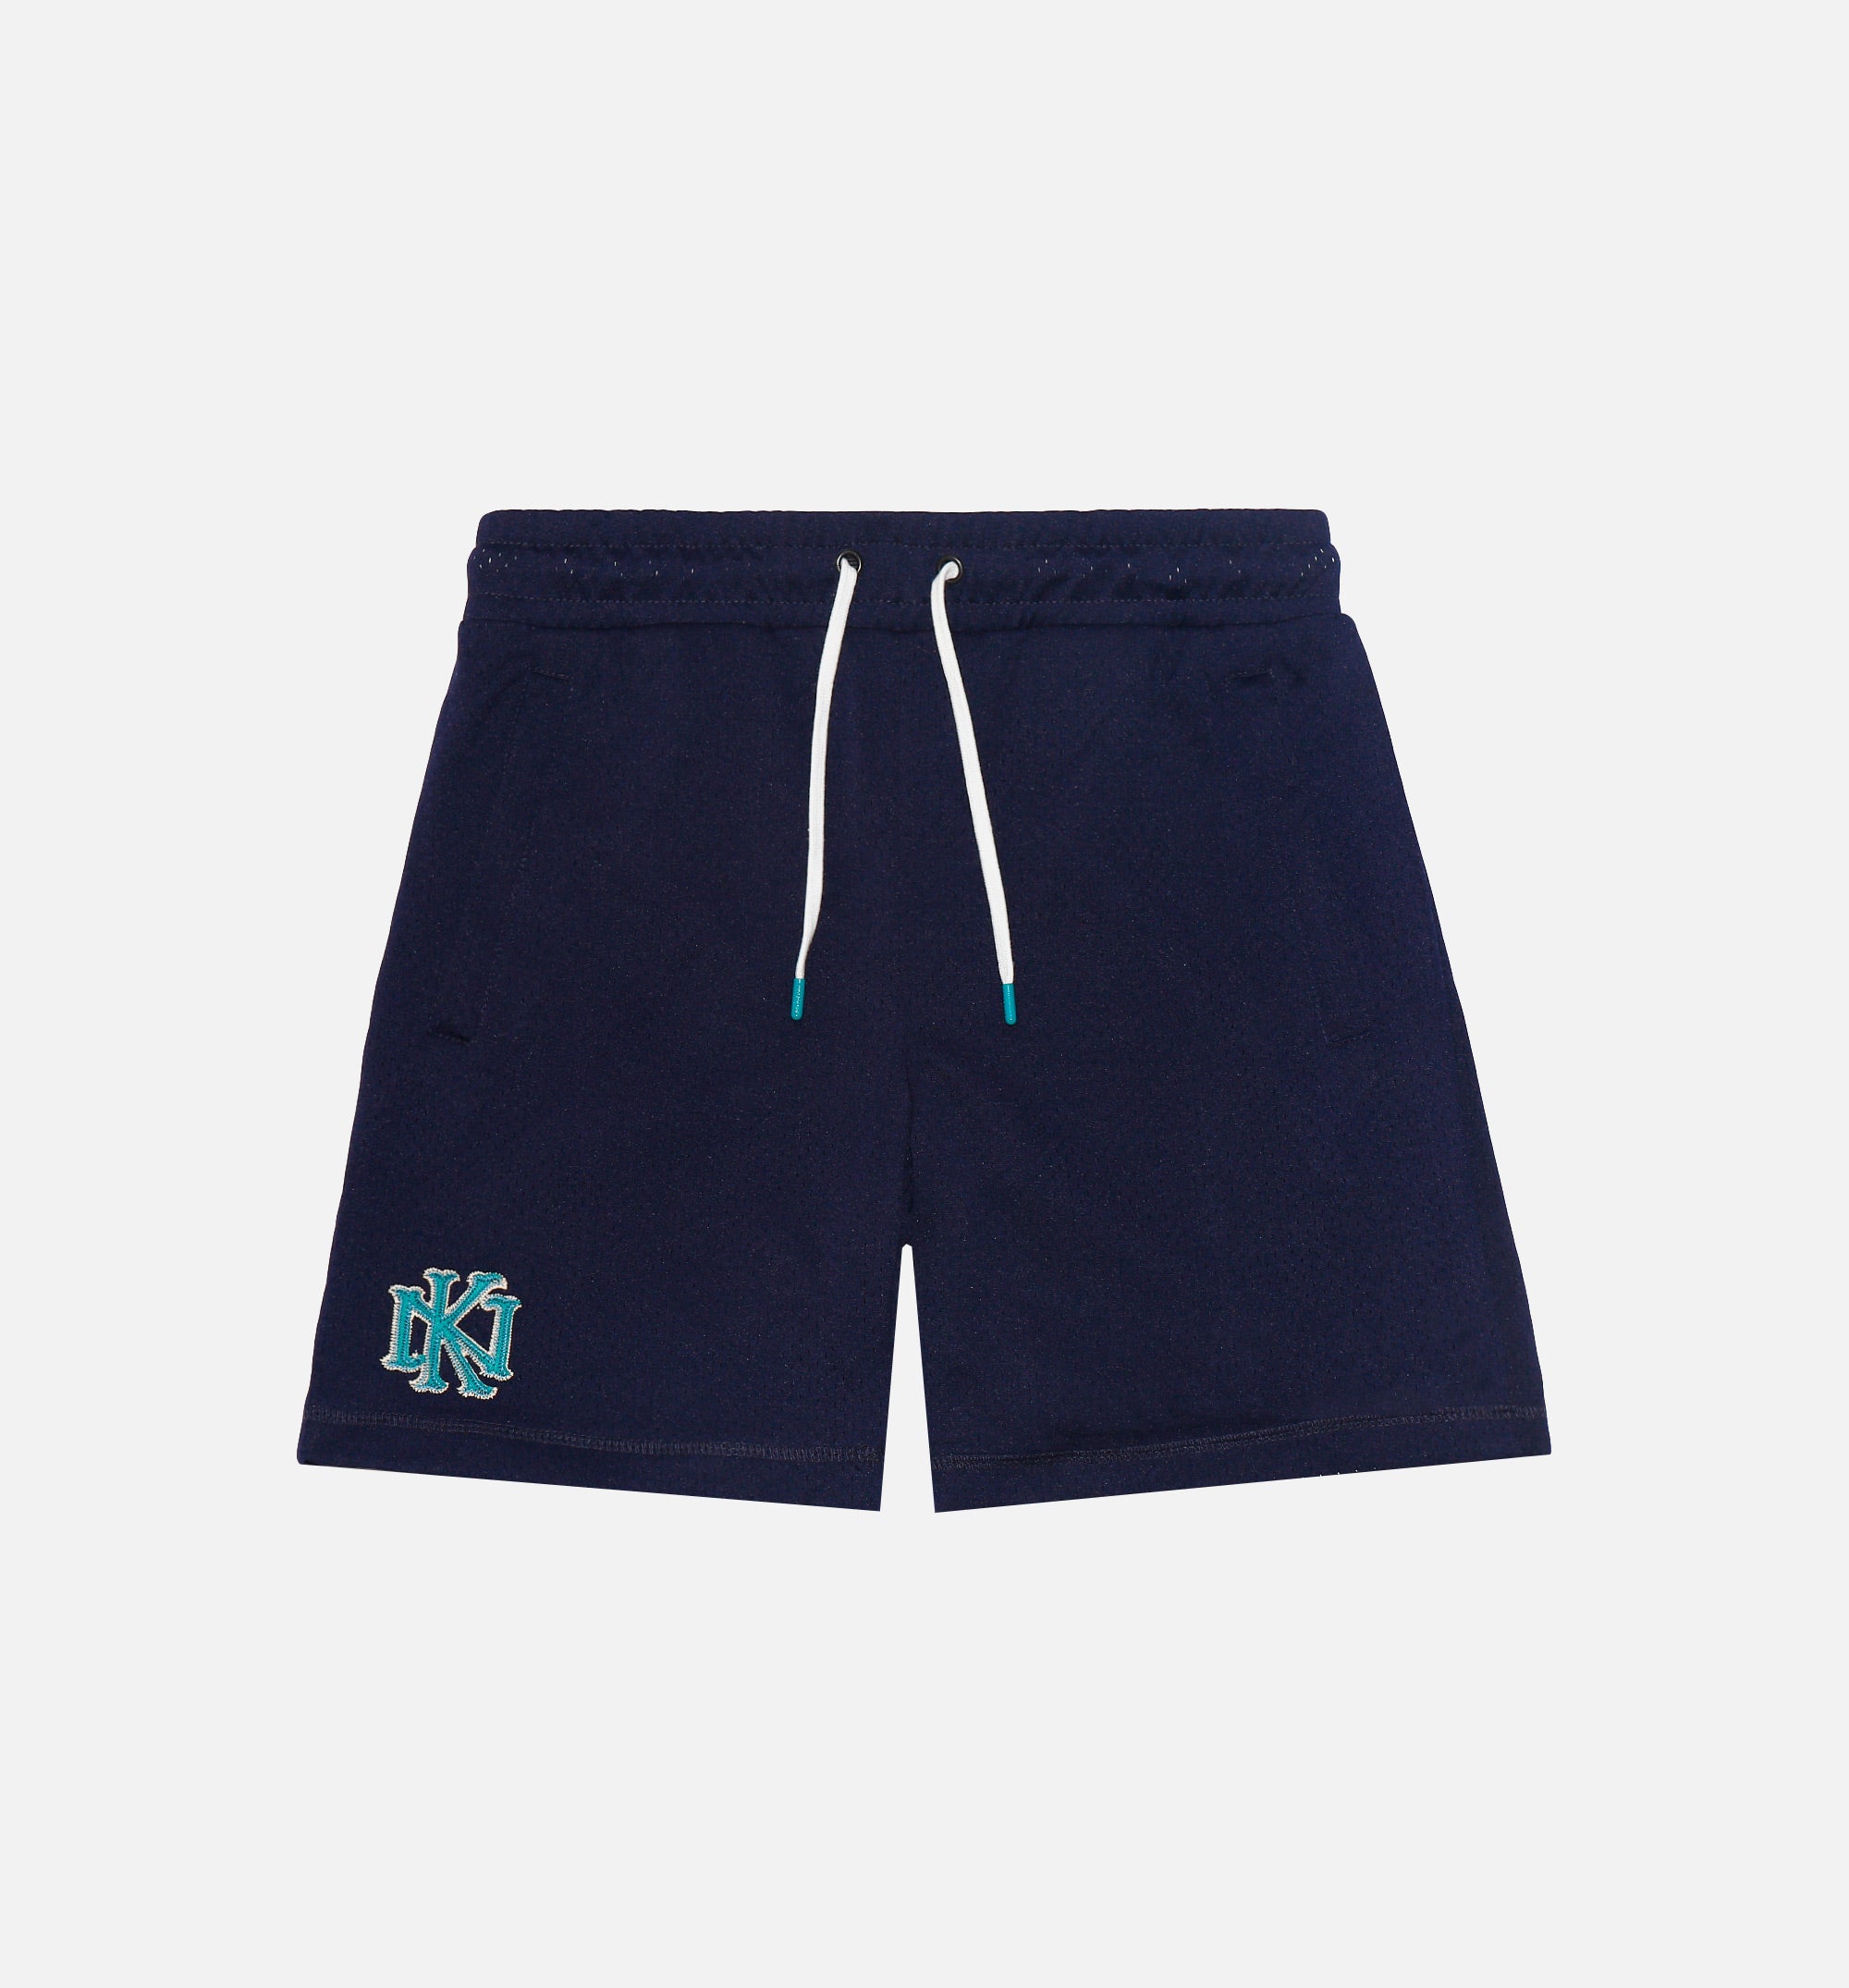 Nice Kicks Premium SU21-006-NVY Monogram Mesh Short Mens Shorts